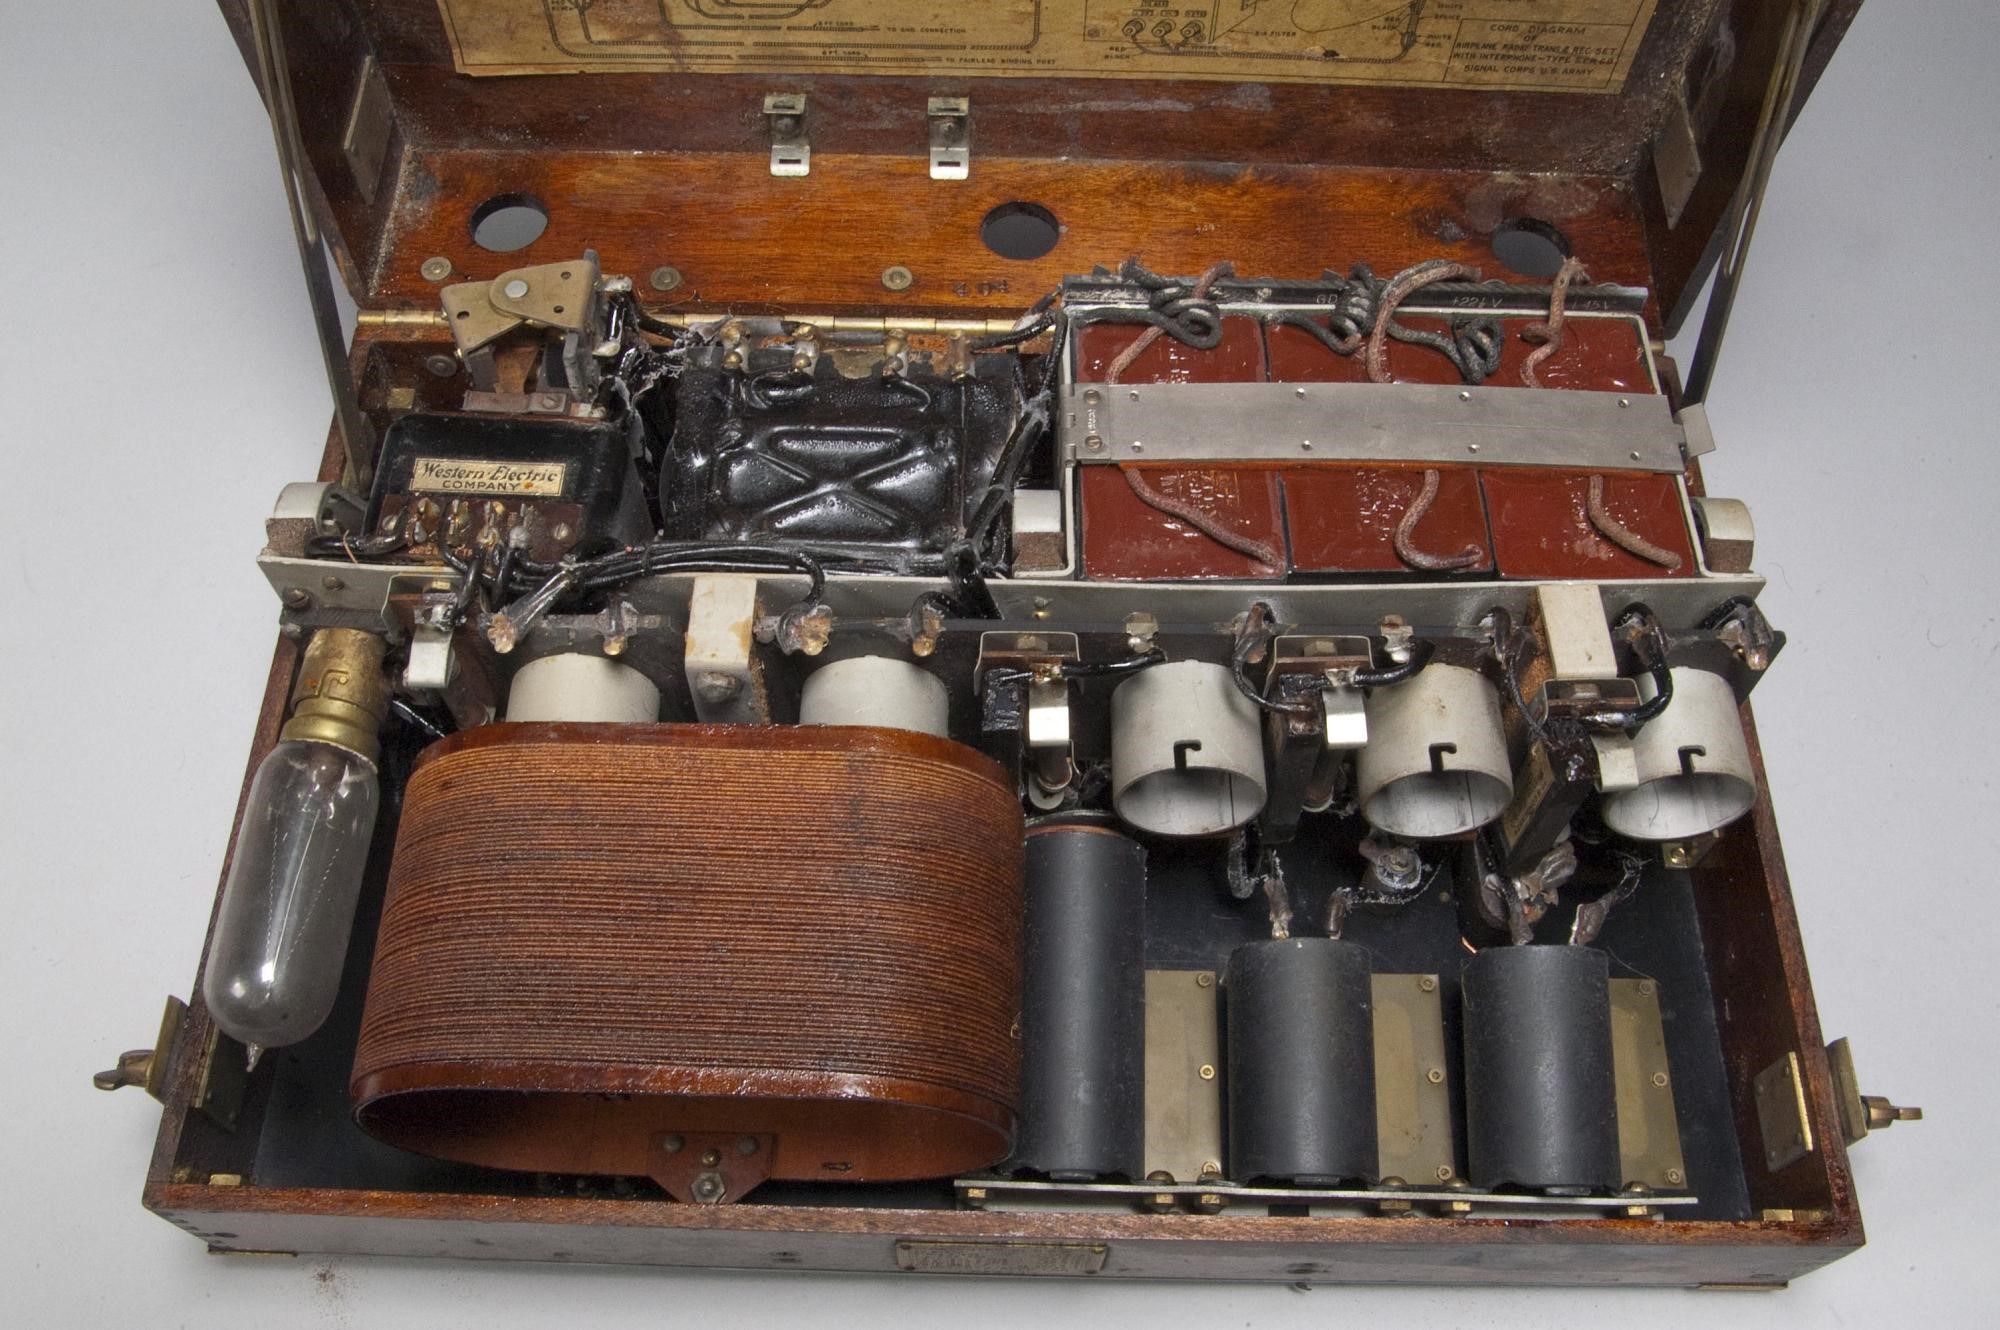 Главный блок трансивера Western Electric SCR 68, 1918 год, — первый военный радиотелефон. Слева вверху две батареи, справа от них — три конденсатора, в нижней части снимка отсек для ламп с шестью цоколями (пять рабочих ламп схемы усилителя и детектора, крайняя левая — балластная, устанавливалась не всегда), два из которых закрыты катушкой для экономии места. В глубине за цоколями ламп видны три чёрных регулировочных катушки. Этот трансивер — наглядный пример навесного монтажа, все элементы крепятся к корпусу и соединяются отдельными проводами. Такая методика сборки будет превалирующей вплоть до середины 1960-х / ©Smithsonian National Air and Space Museum